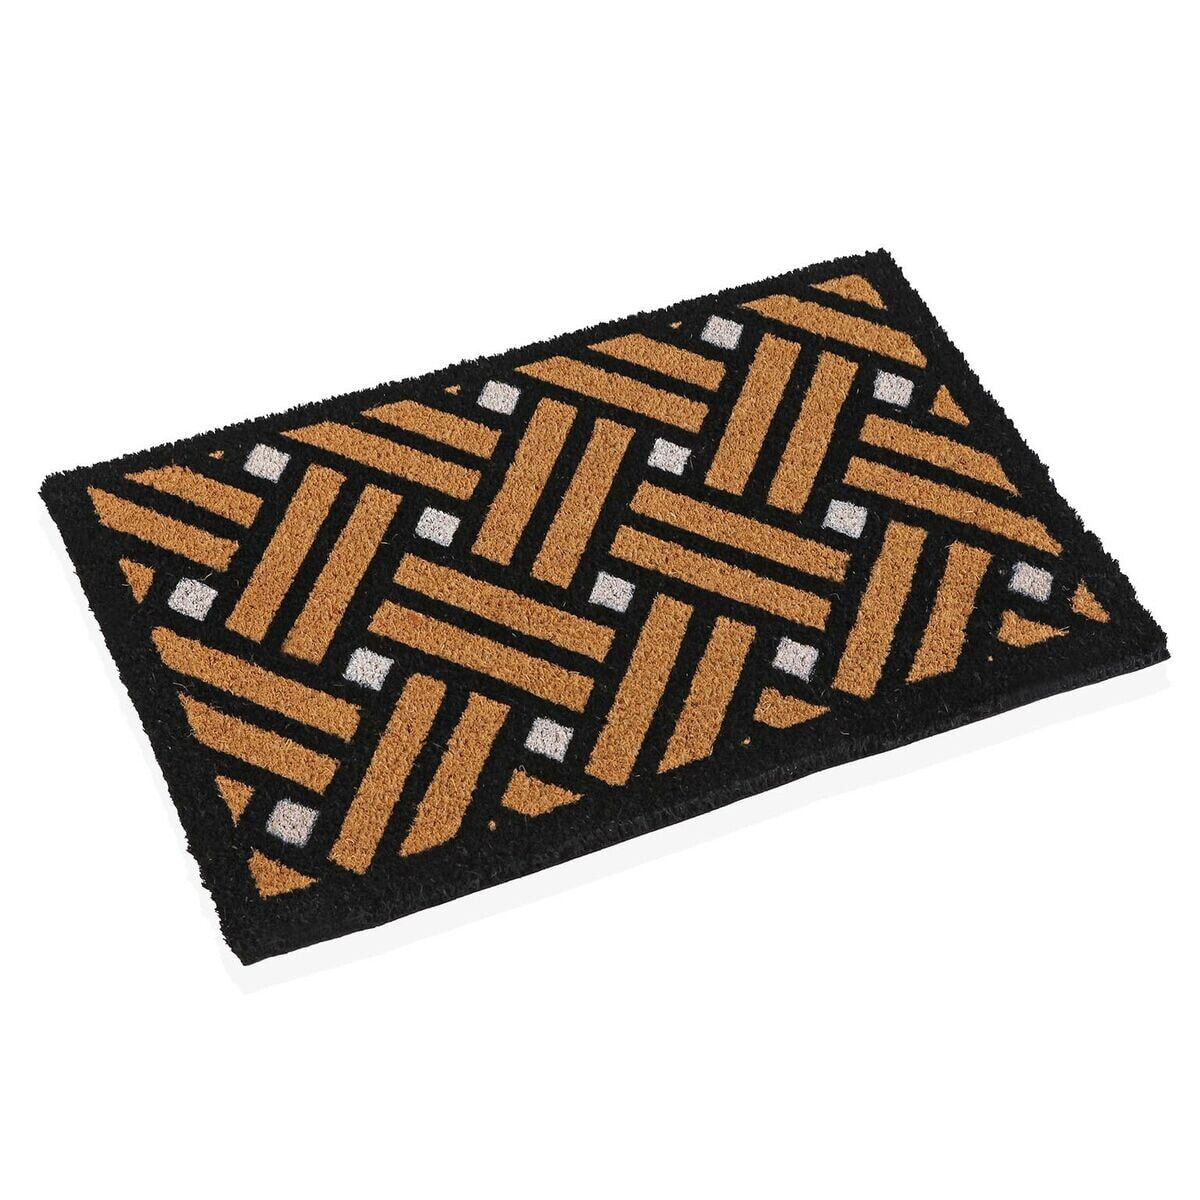 Doormat Versa Bricks Coconut Fibre 40 x 2 x 60 cm